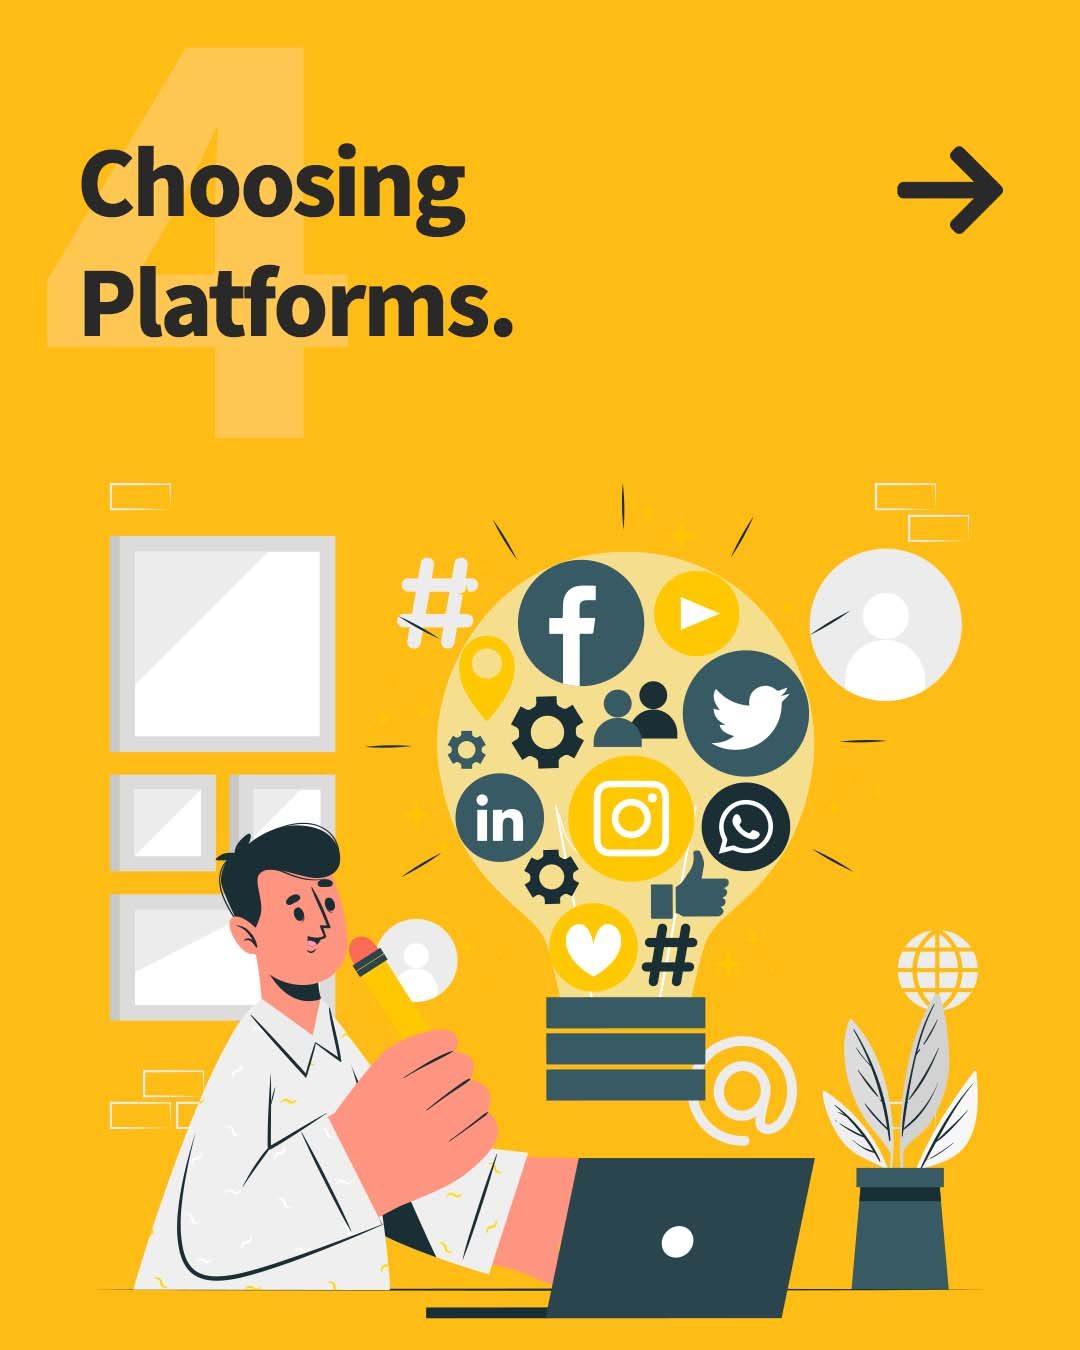 Choosing platforms